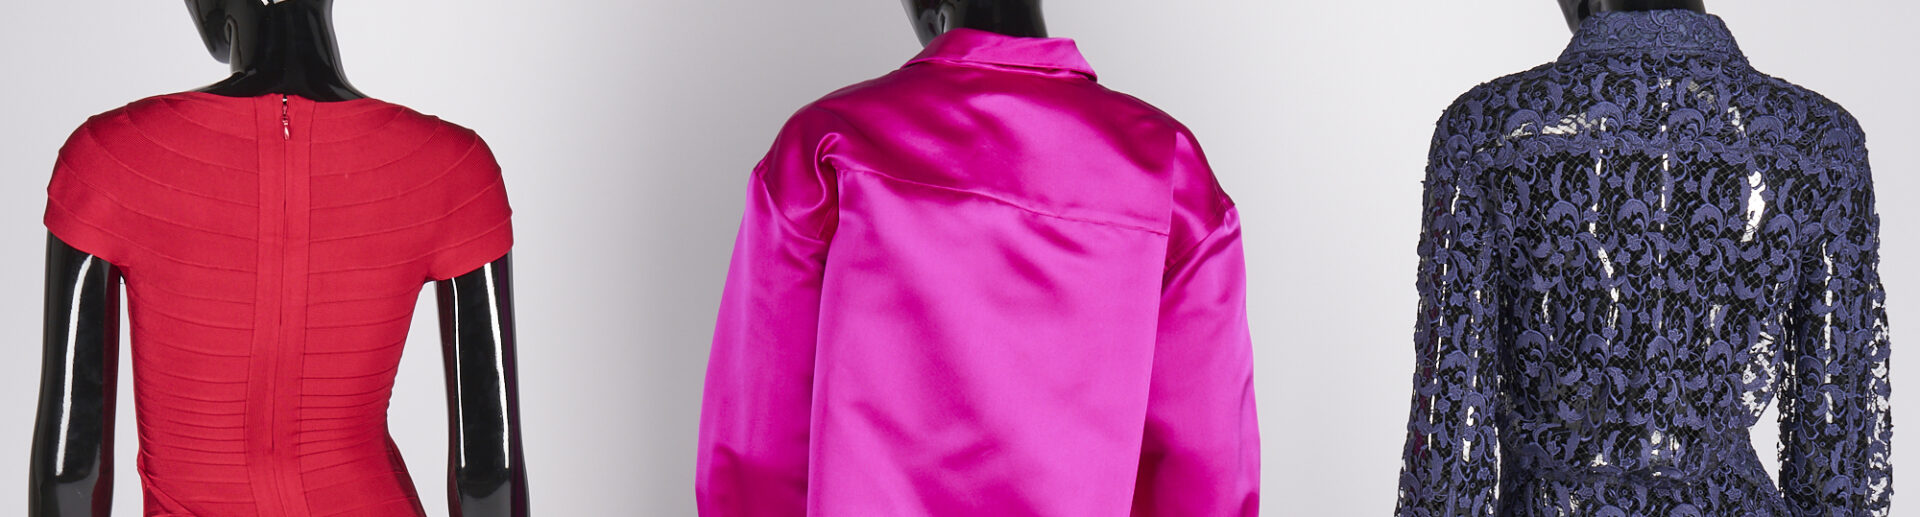 Lot 752: 3 Couture Garments, incl. Herve Leger & Balenciaga